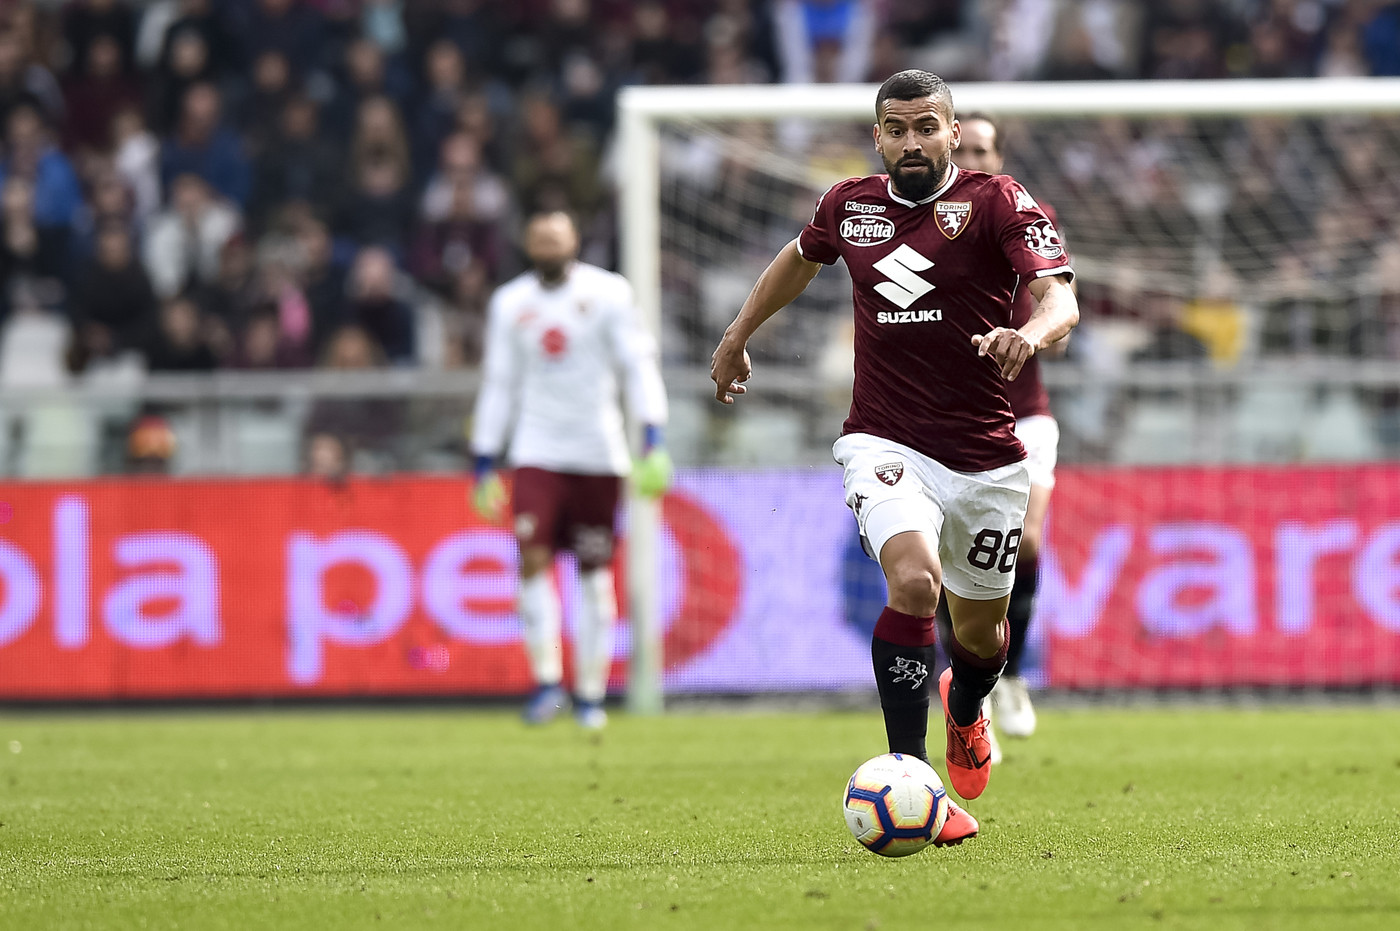 Serie A, Torino-Chievo 3-0 | Il fotoracconto